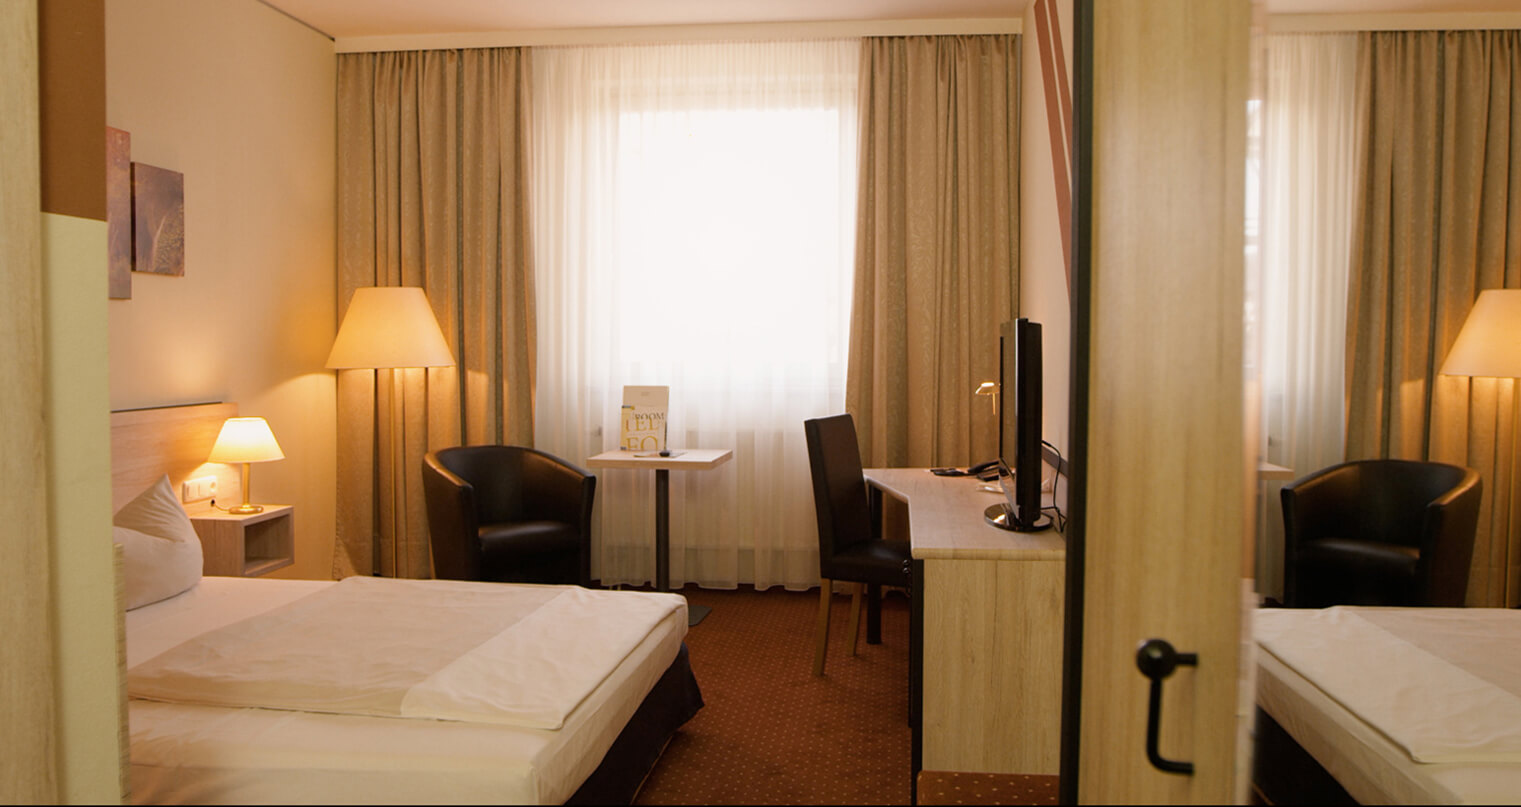 Complete hotel interior room renovation in the Novina Hotel Südwestpark Nuremberg using W945 film - after